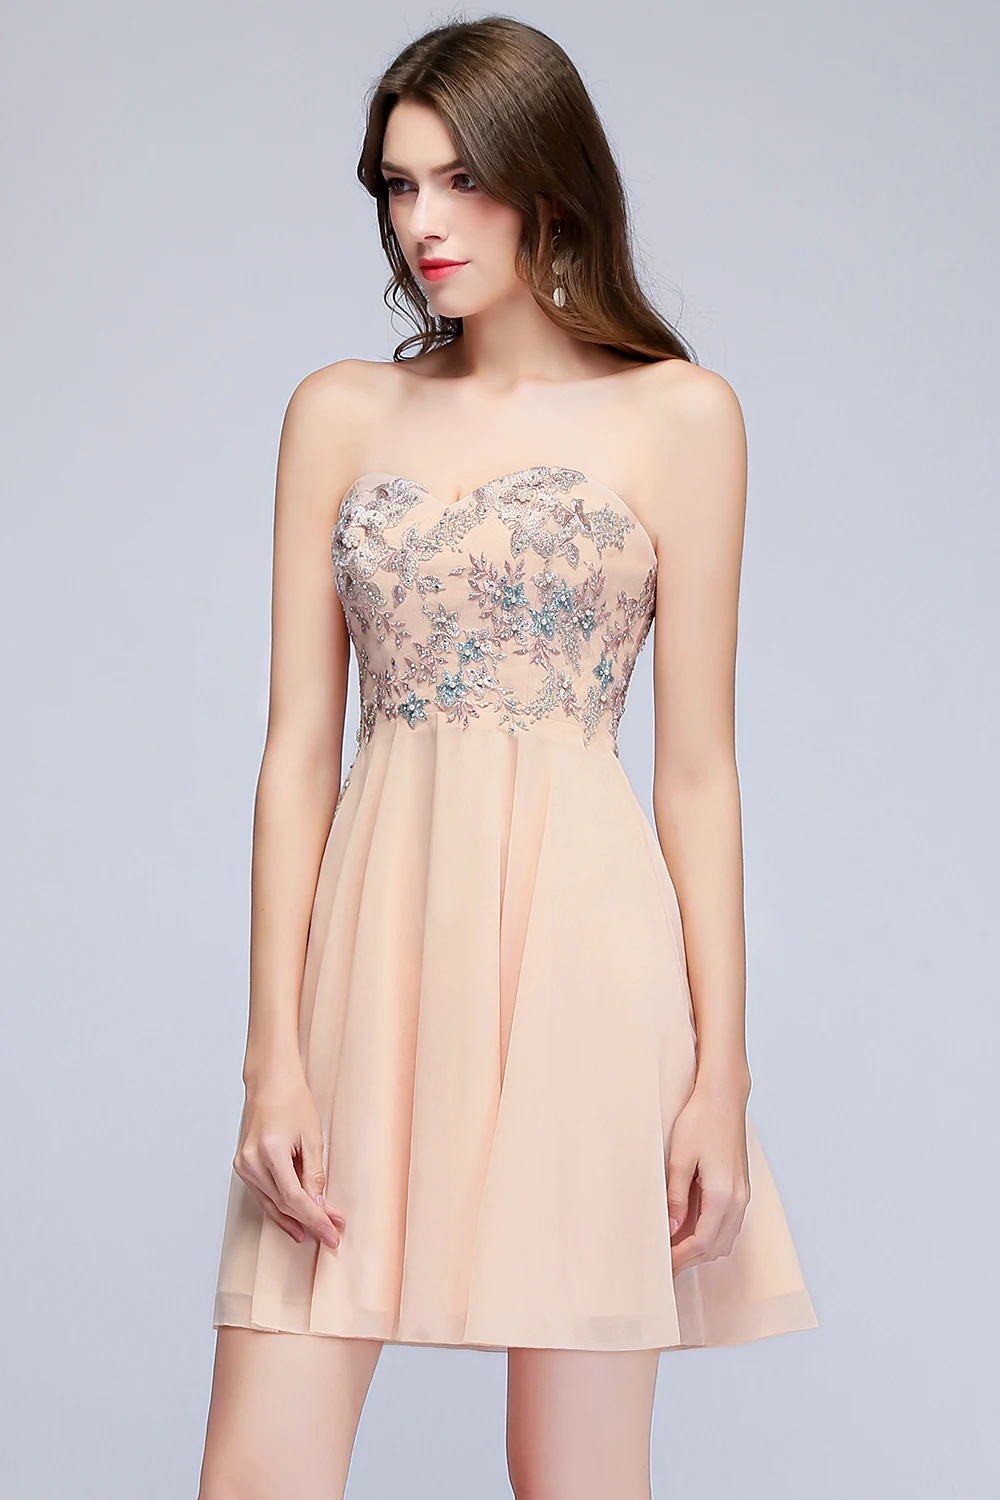 Шифон Милая Розовый жемчуг Короткие платья невесты элегантные женское платье для Свадебная вечеринка короткие вечернее платье